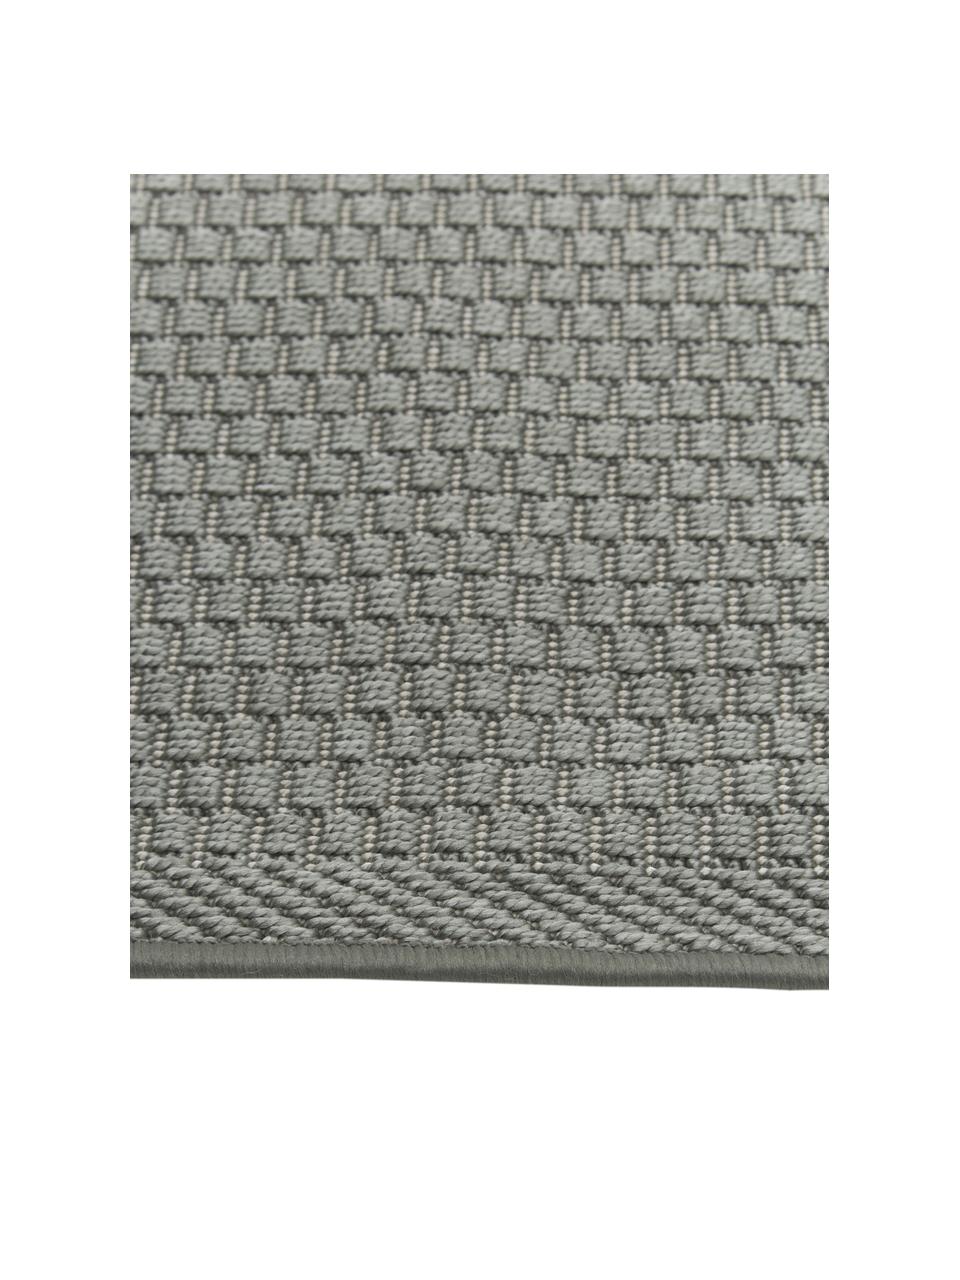 Oválný vnitřní / venkovní koberec Toronto, 100 % polypropylen, Zelená, Š 160 cm, D 230 cm (velikost M)